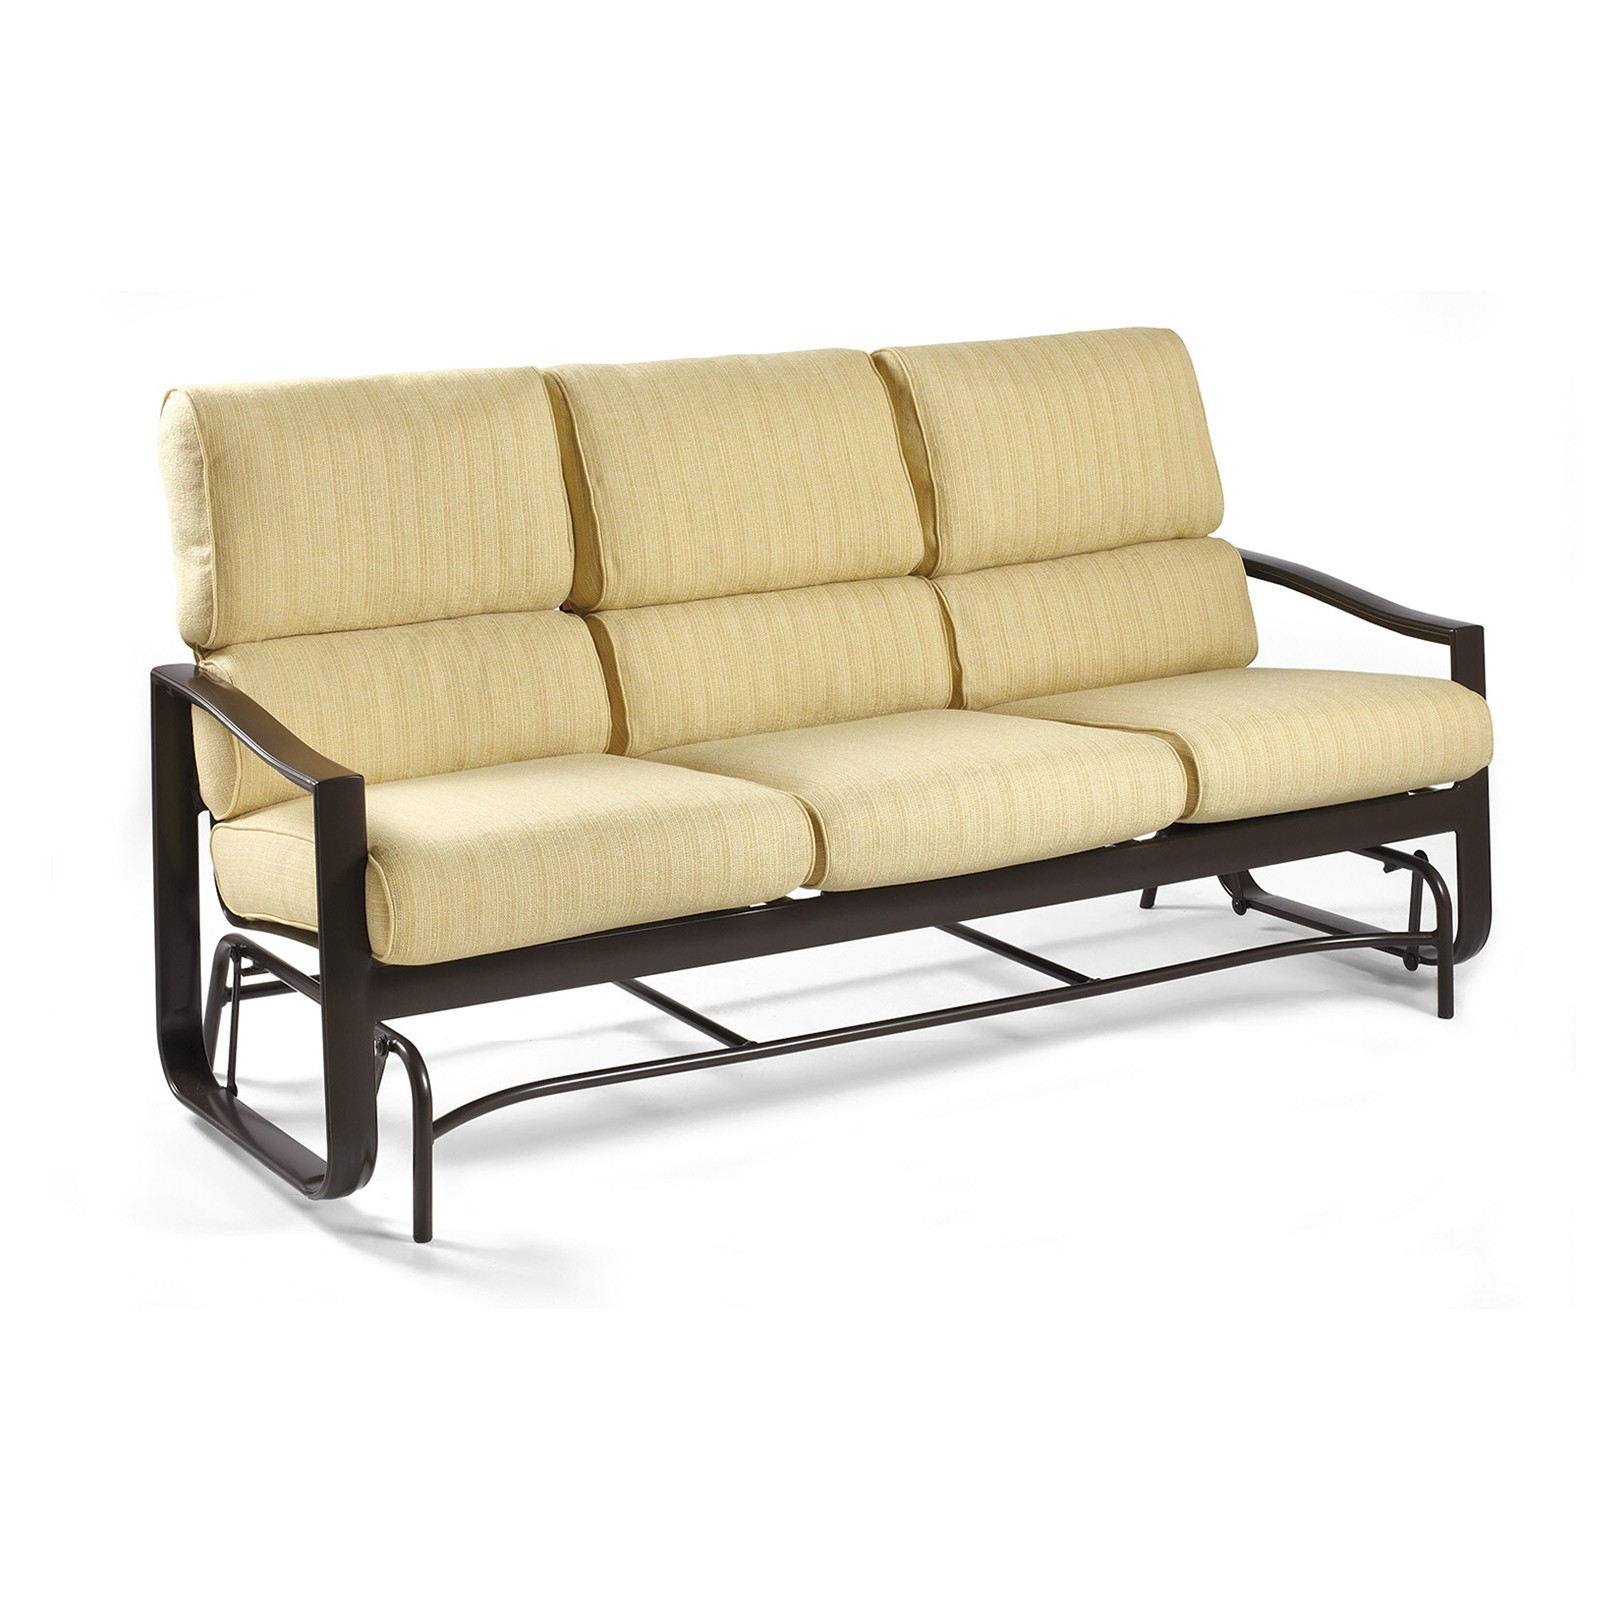 Winston belvedere cushion sofa glider outdoor sofas